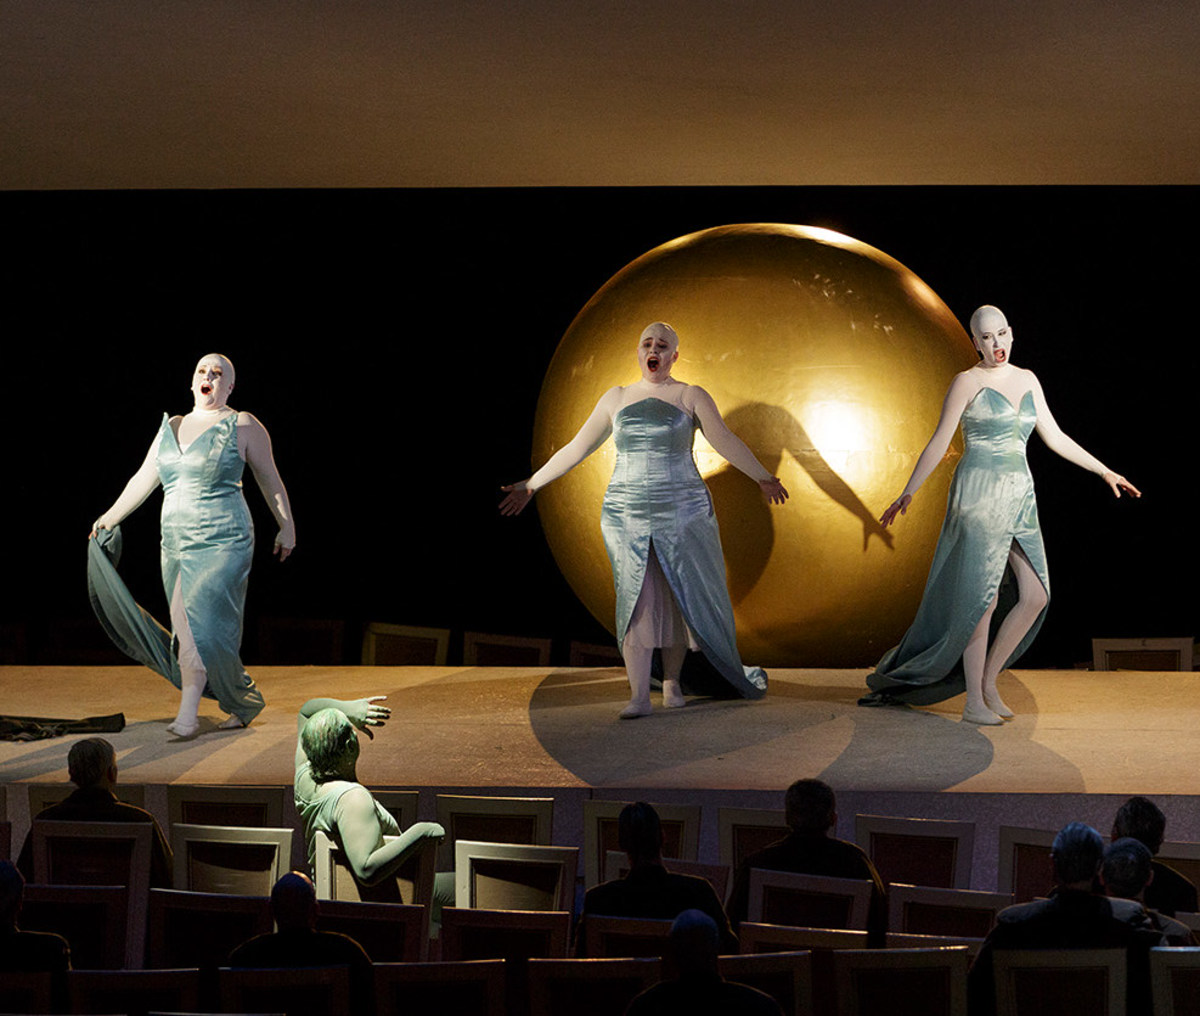 Szene aus "Das Rheingold": 3 Sängerinnen stehen vor großer goldfarbener Kugel